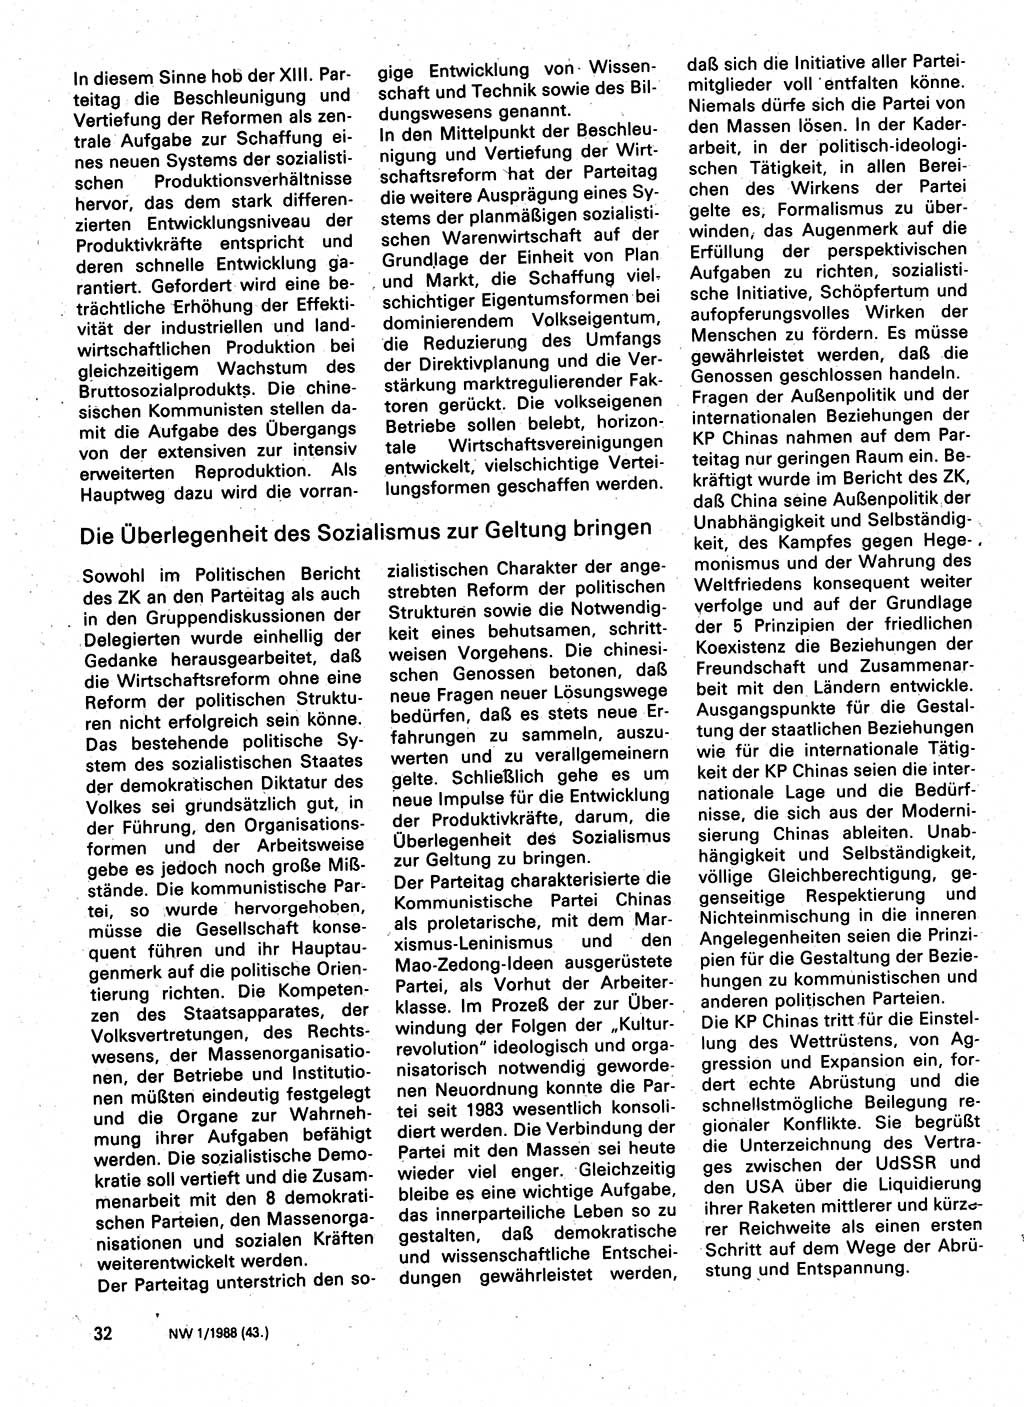 Neuer Weg (NW), Organ des Zentralkomitees (ZK) der SED (Sozialistische Einheitspartei Deutschlands) für Fragen des Parteilebens, 43. Jahrgang [Deutsche Demokratische Republik (DDR)] 1988, Seite 32 (NW ZK SED DDR 1988, S. 32)